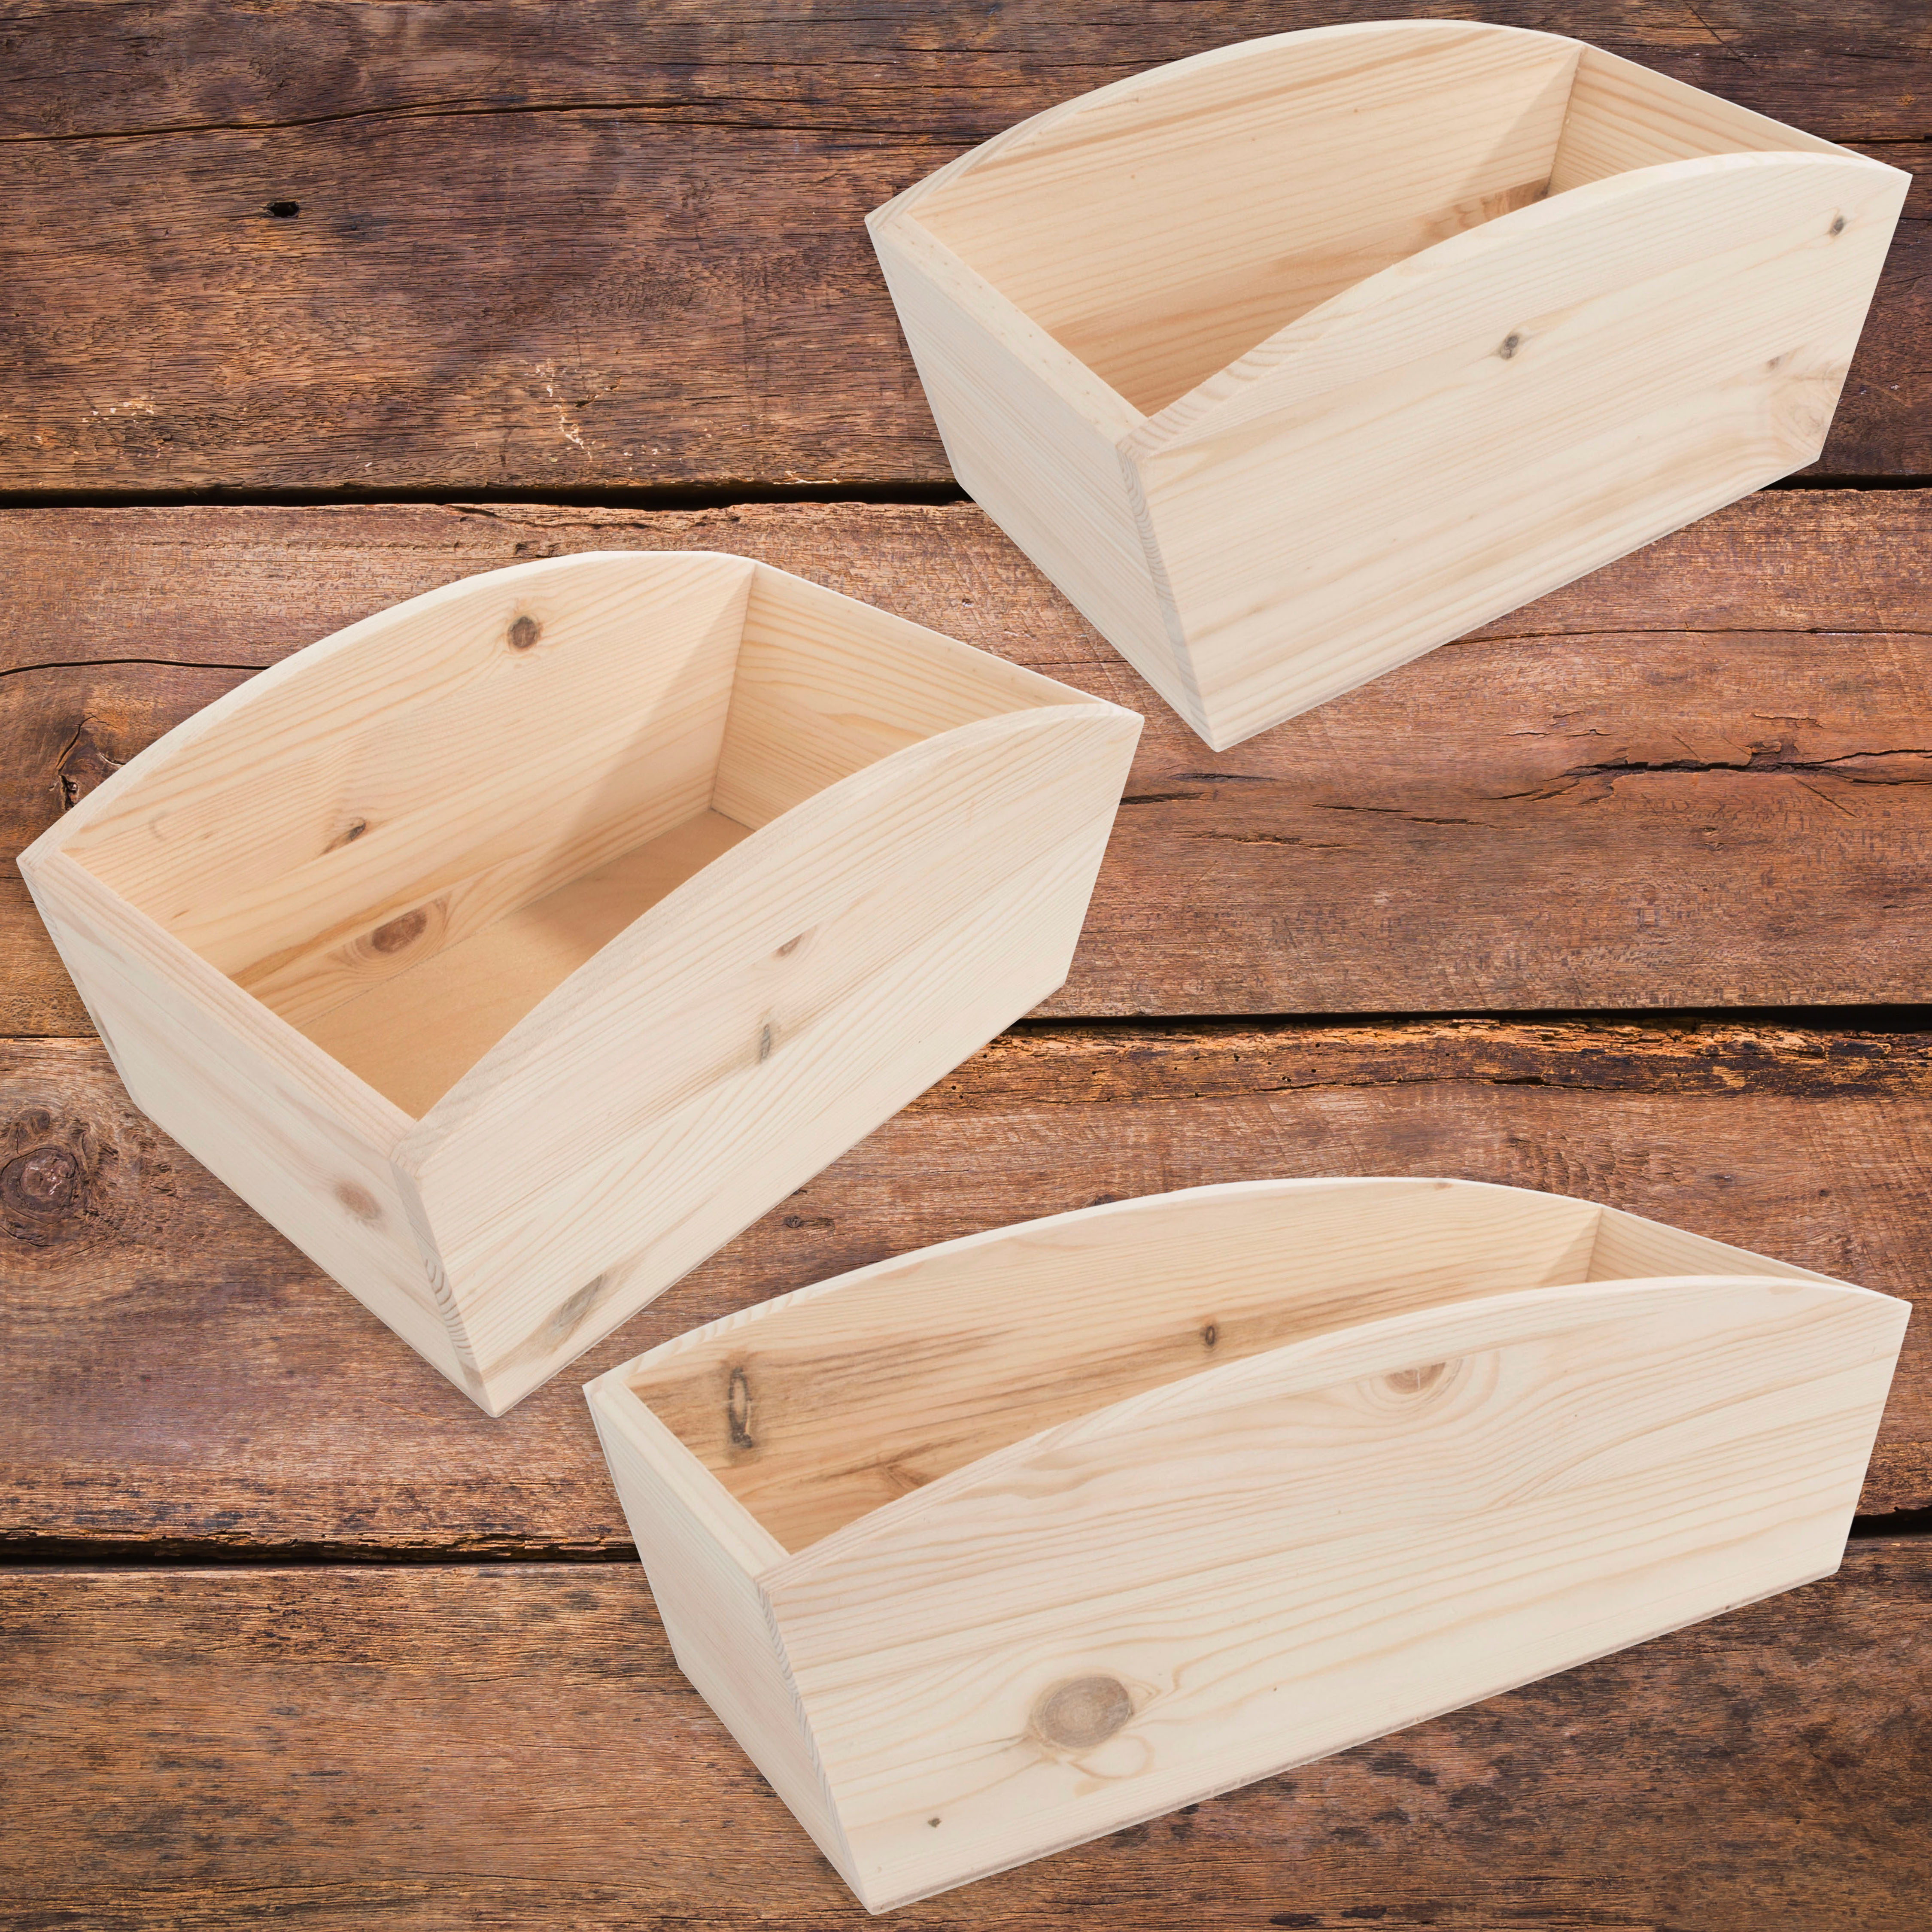 open top wooden box